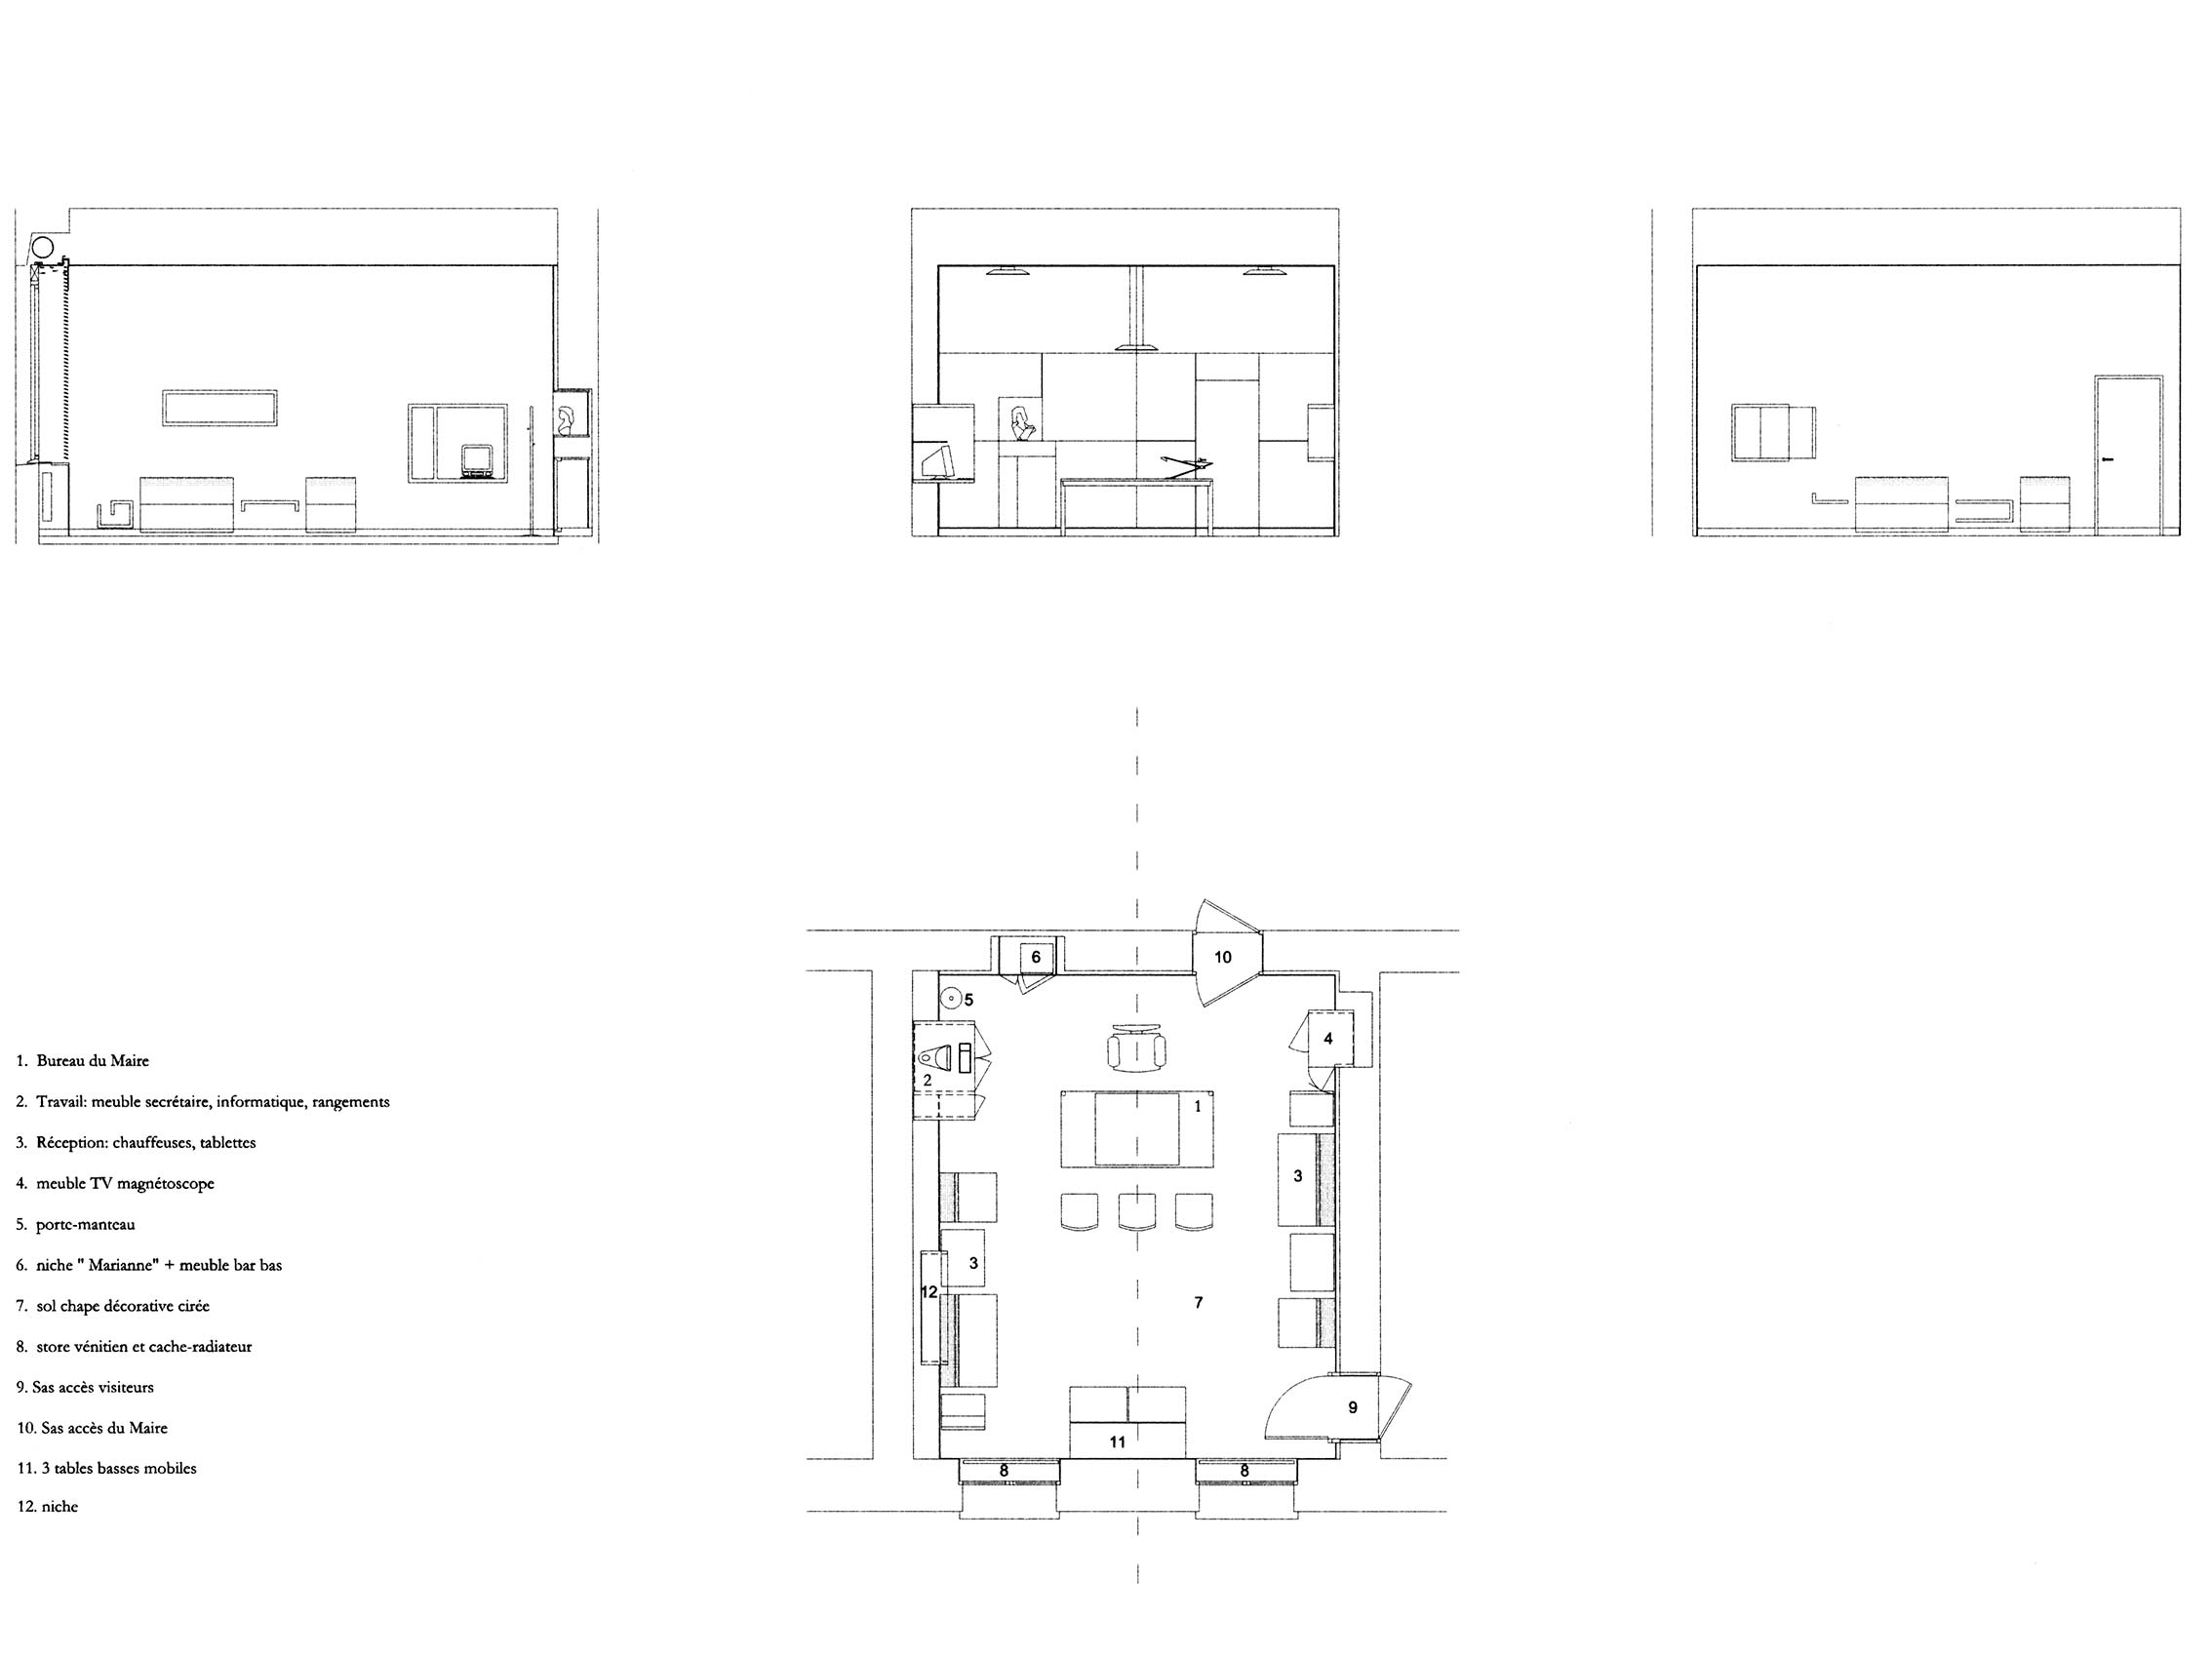 Plan du nouveau bureau du maire de Rive de Gier, après réaménagement par Pierre Scodellari, architecte DPLG et création de mobilier